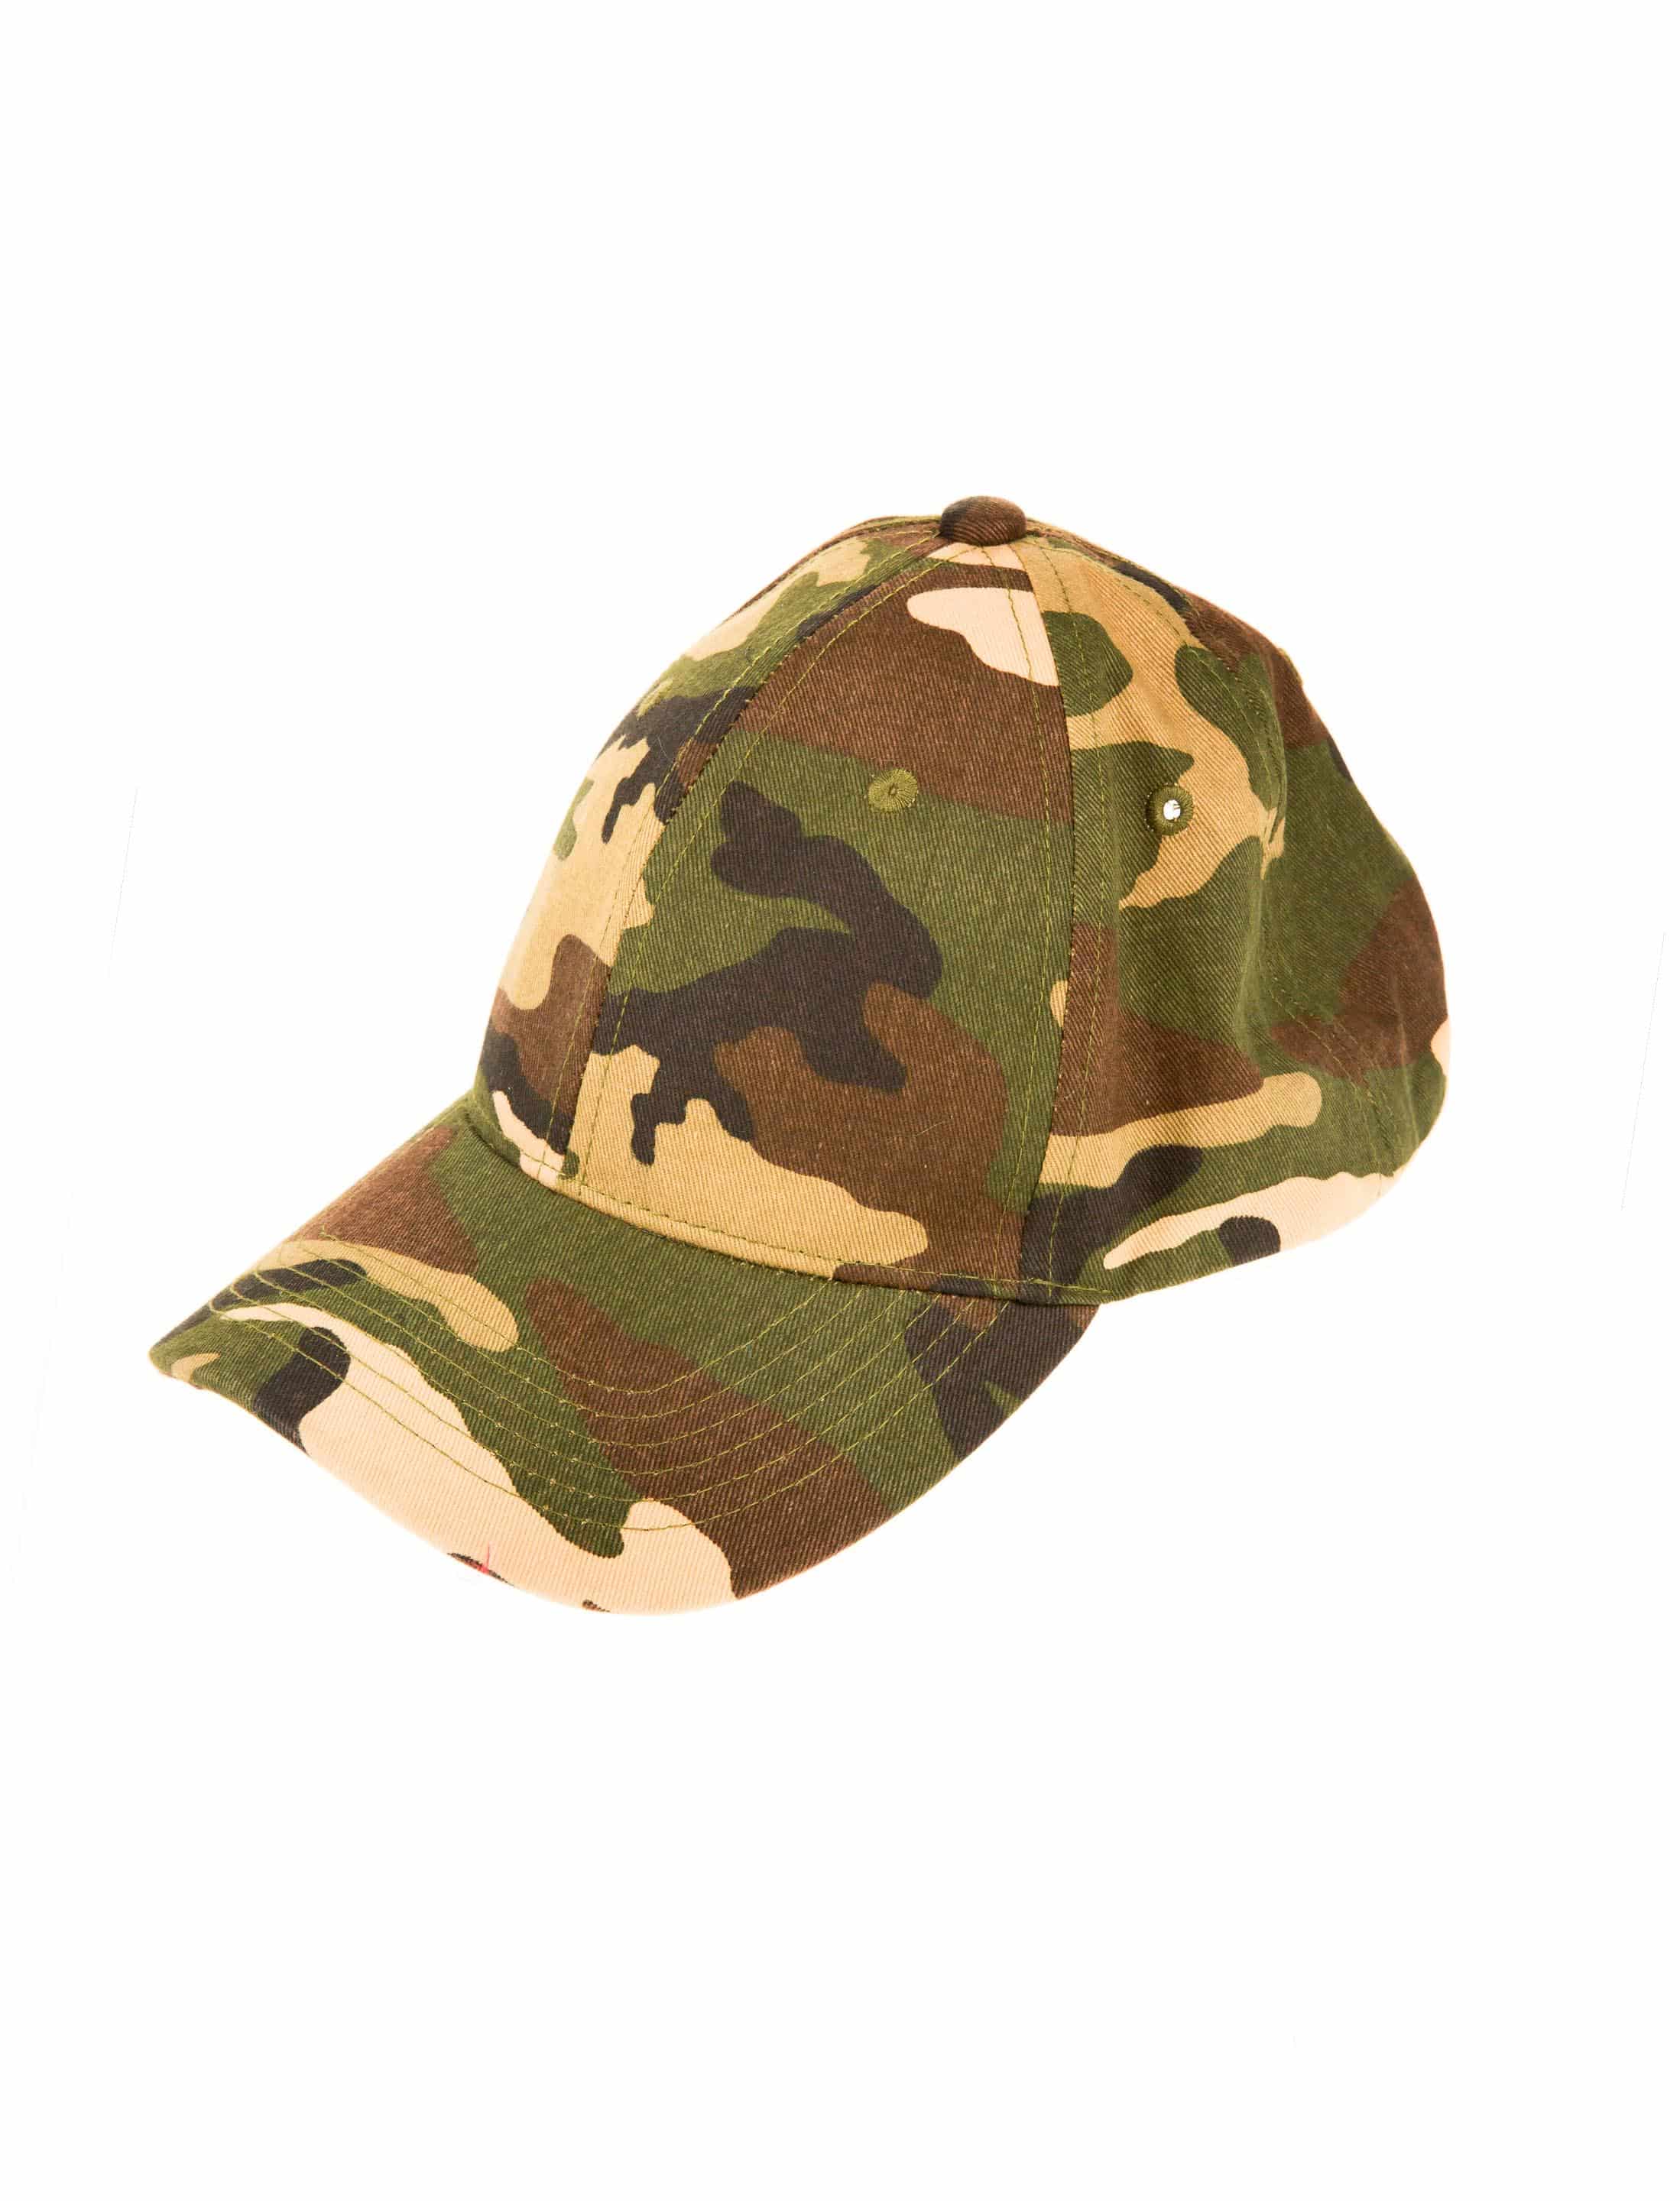 Baseball Cap camouflage one size